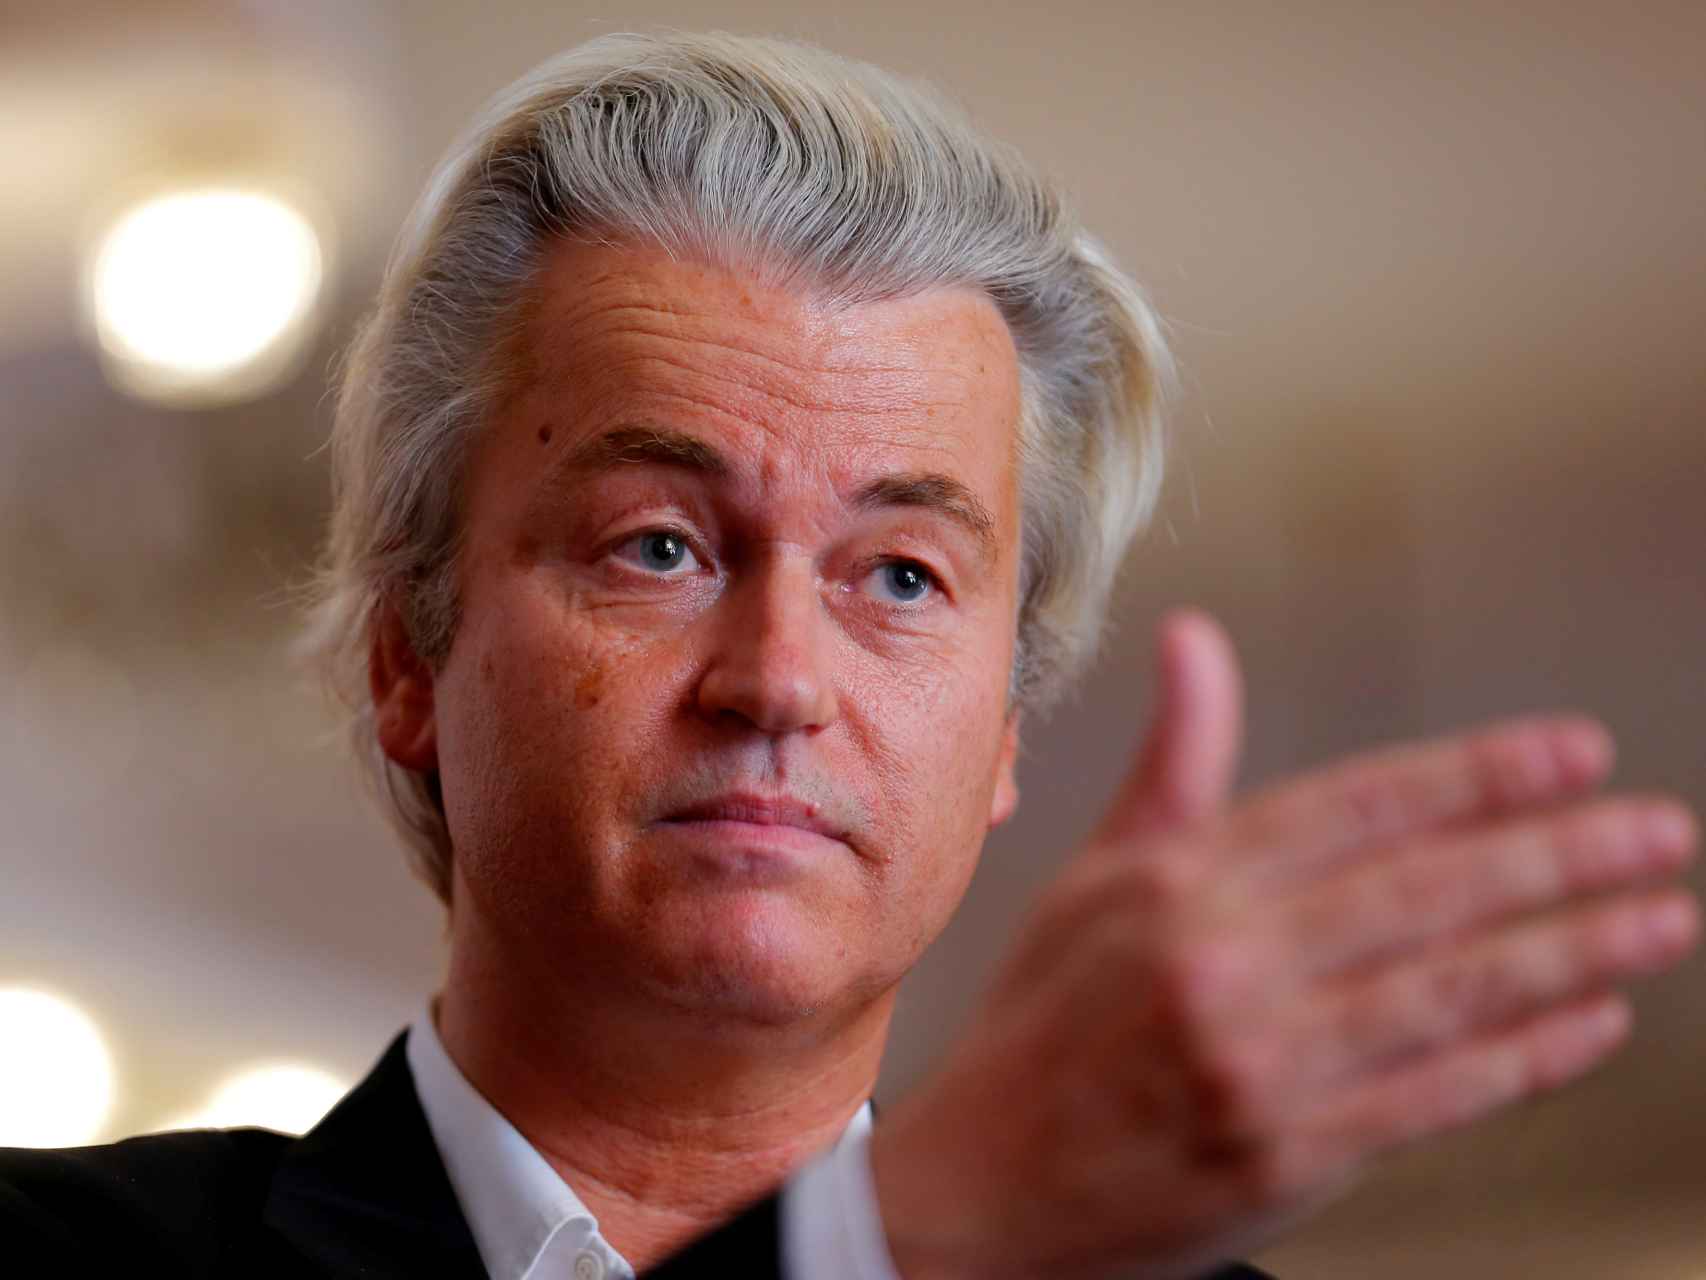 El xenófobo Geert Wilders encabeza los sondeos para las elecciones holandesas de 2017